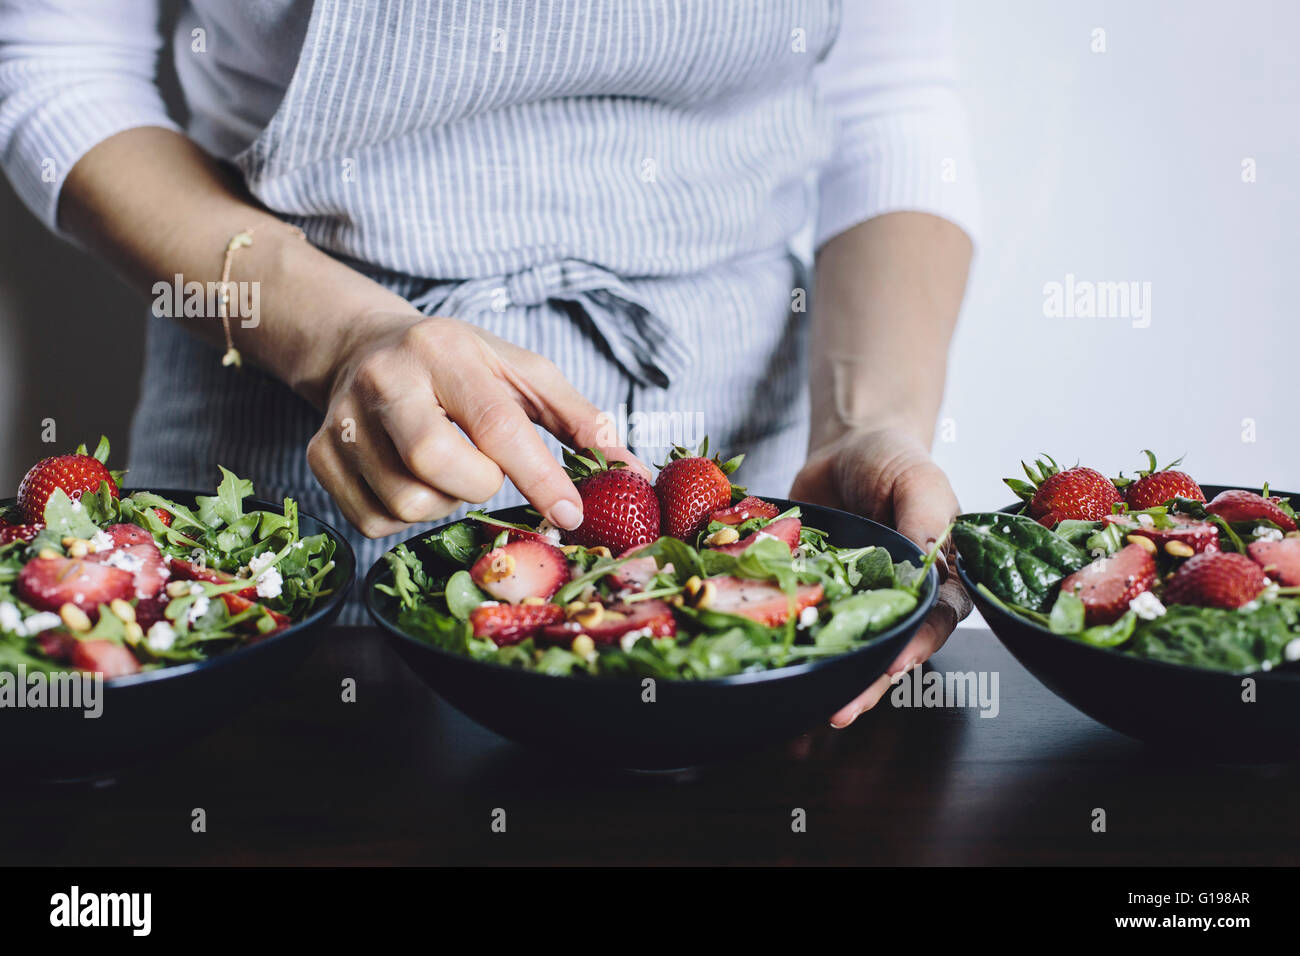 Une femme est photographié à partir de la vue de face, tout en plaçant une fraise dans un bol d'épinards et de fraises salade de roquette. Banque D'Images